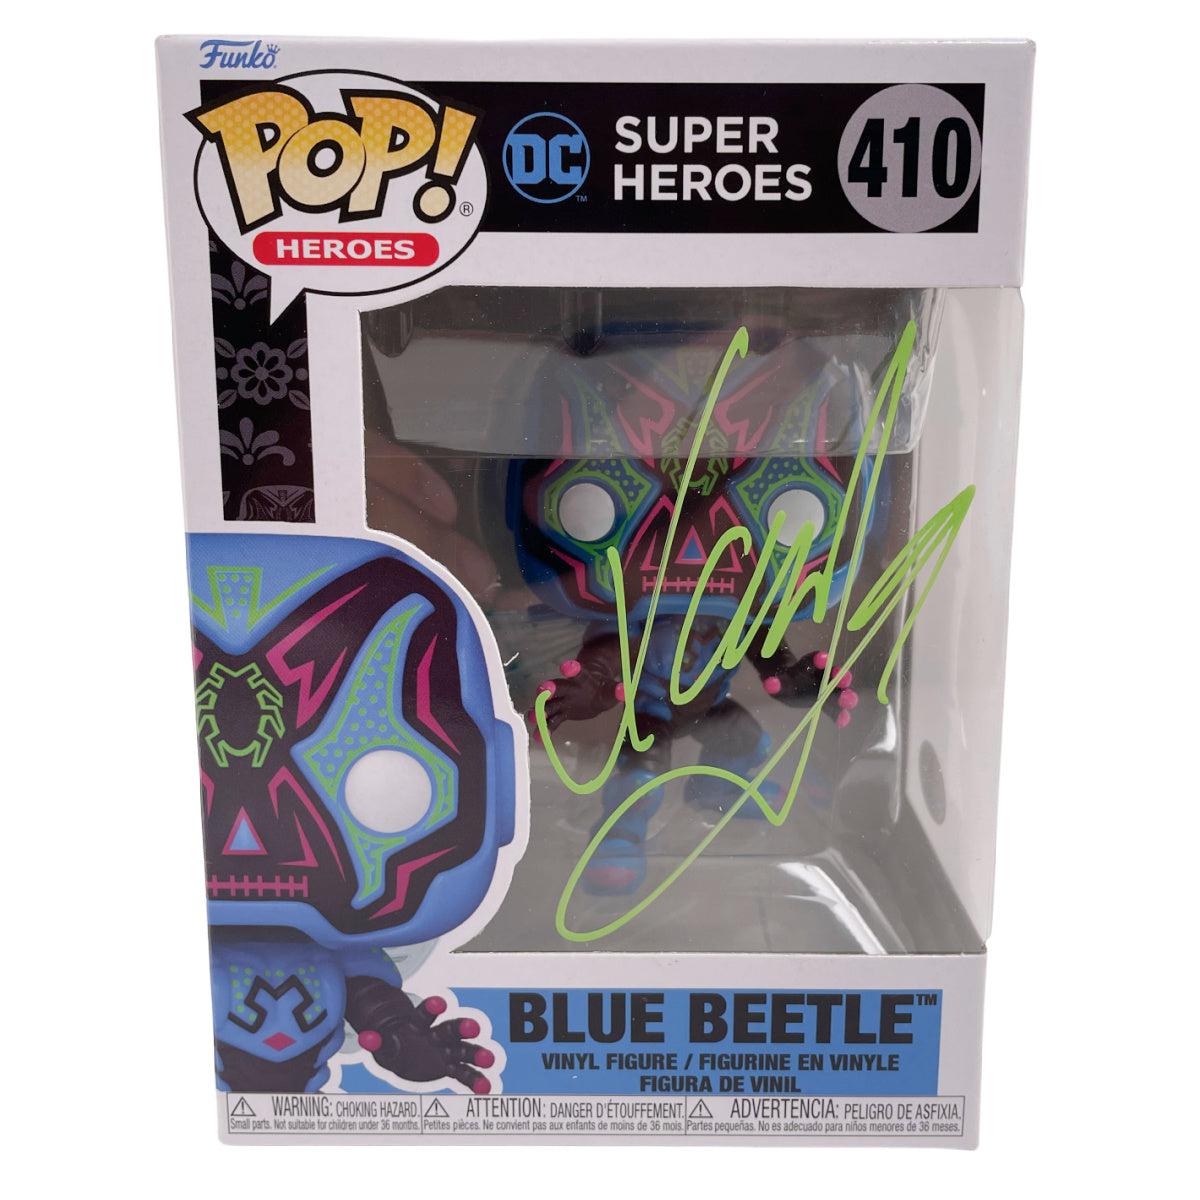 Buy Pop! Blue Beetle at Funko.